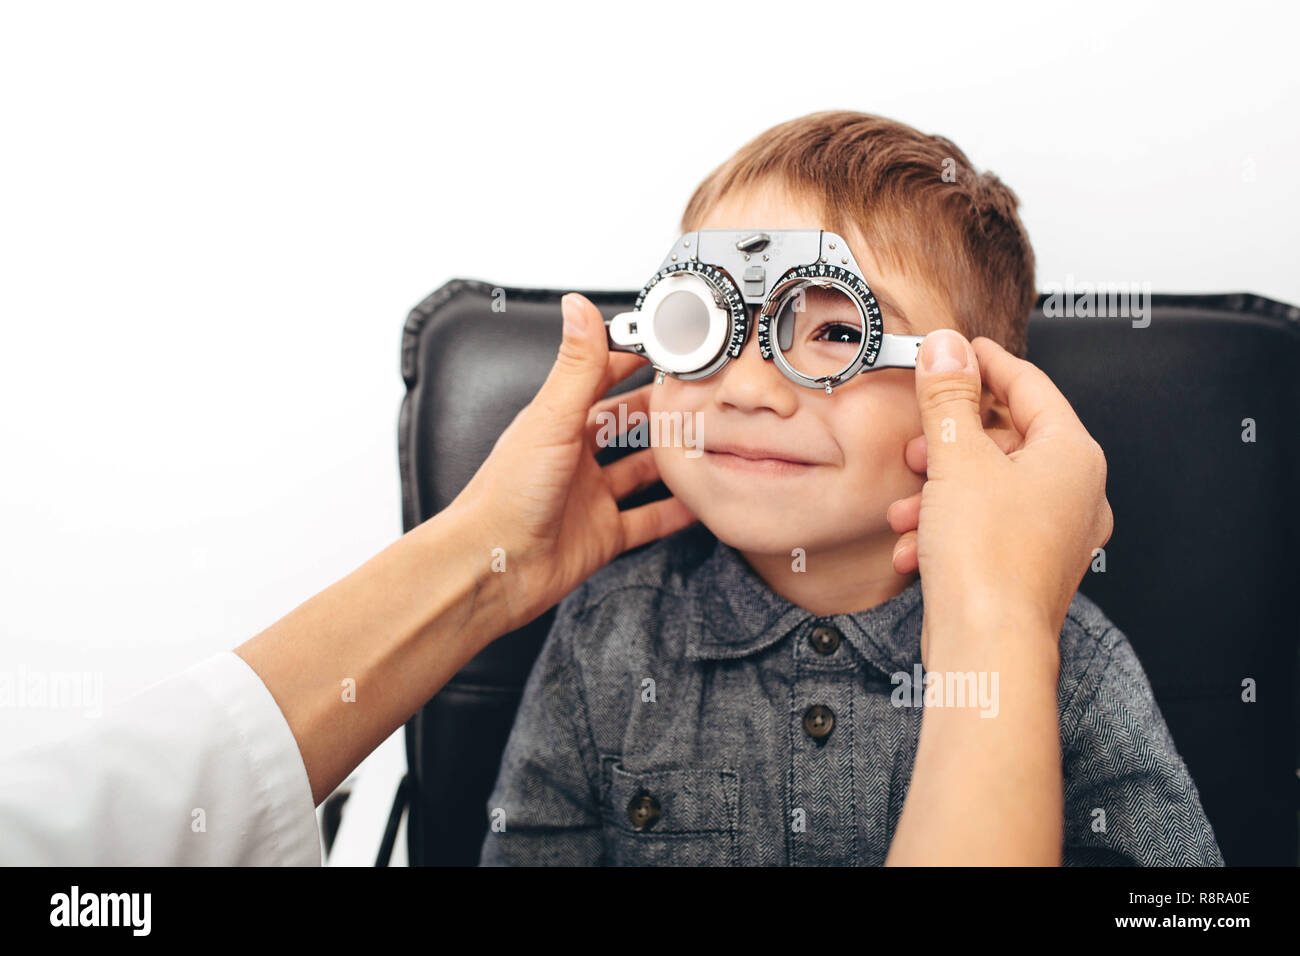 Optiker prüfen Vision von einem wenig freundlichen jungen mit Trial Rahmen Stockfoto